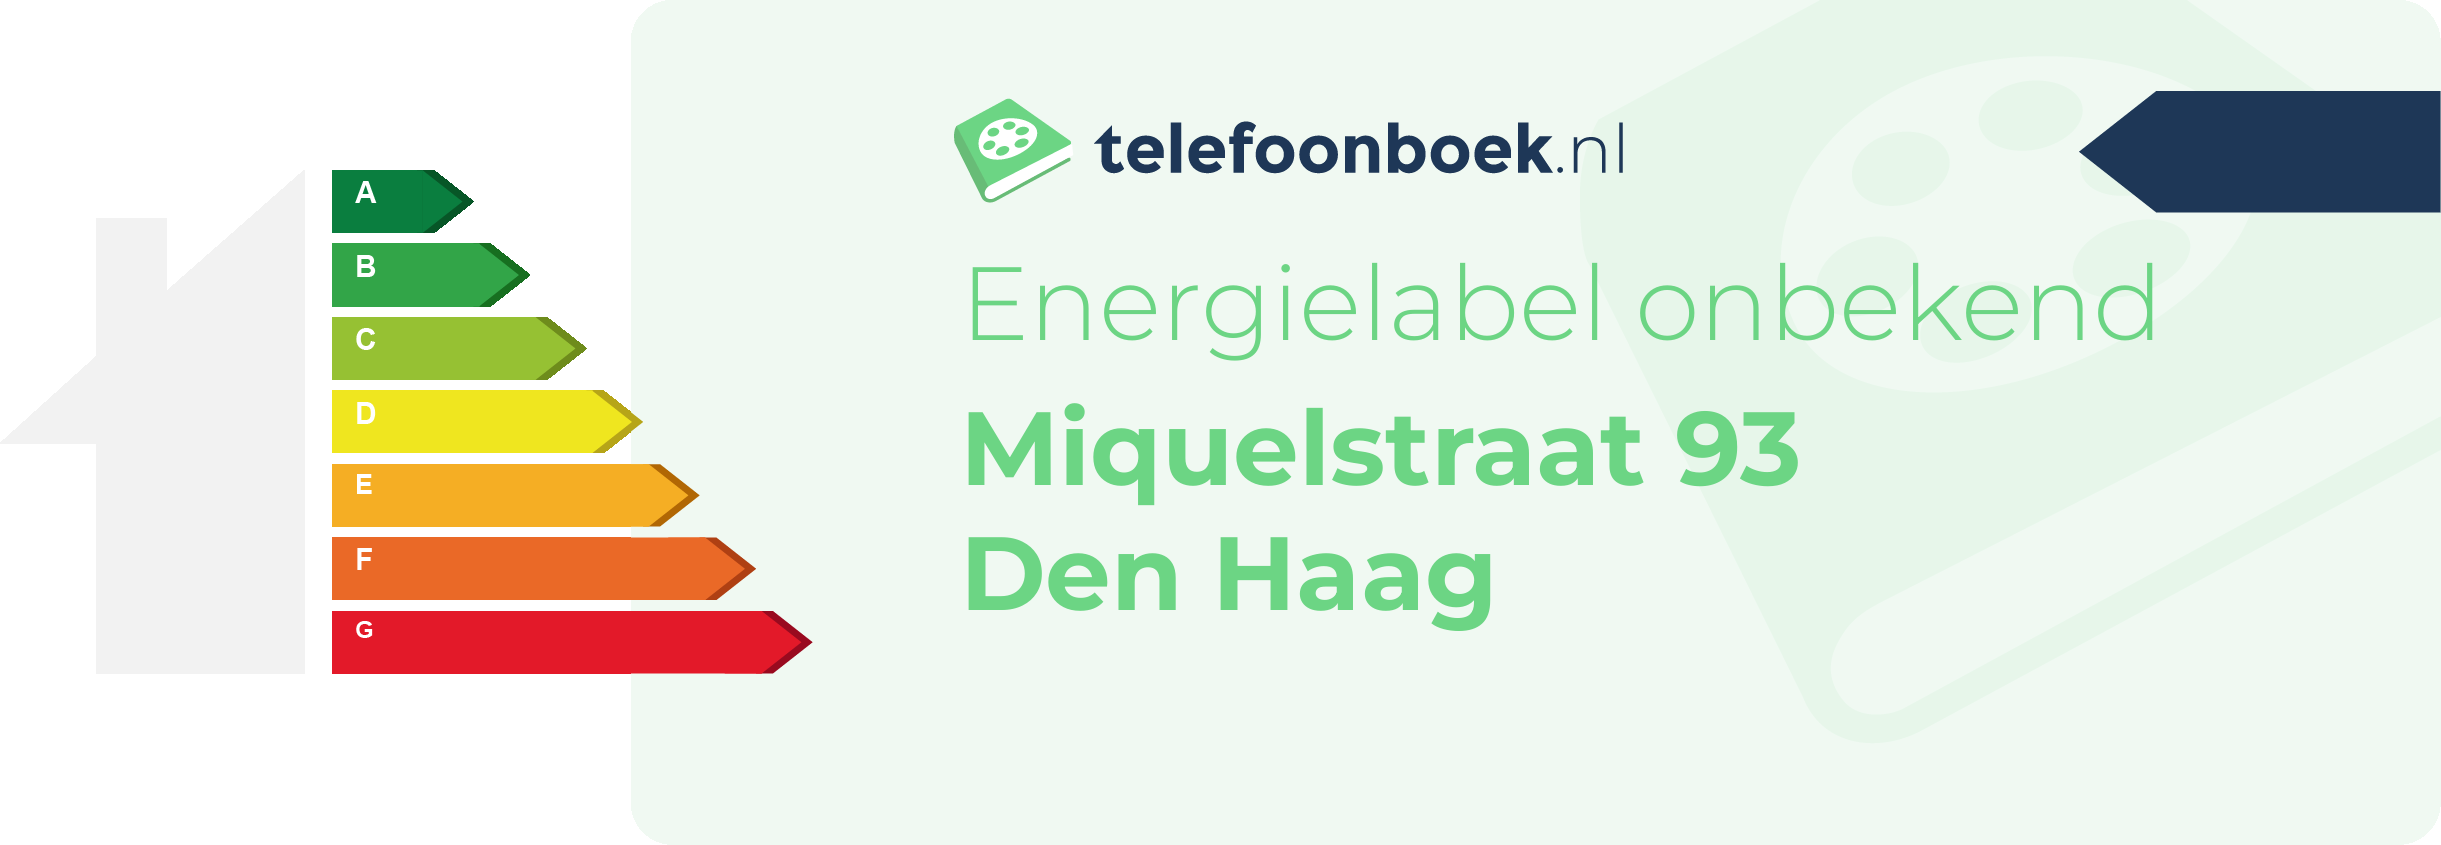 Energielabel Miquelstraat 93 Den Haag